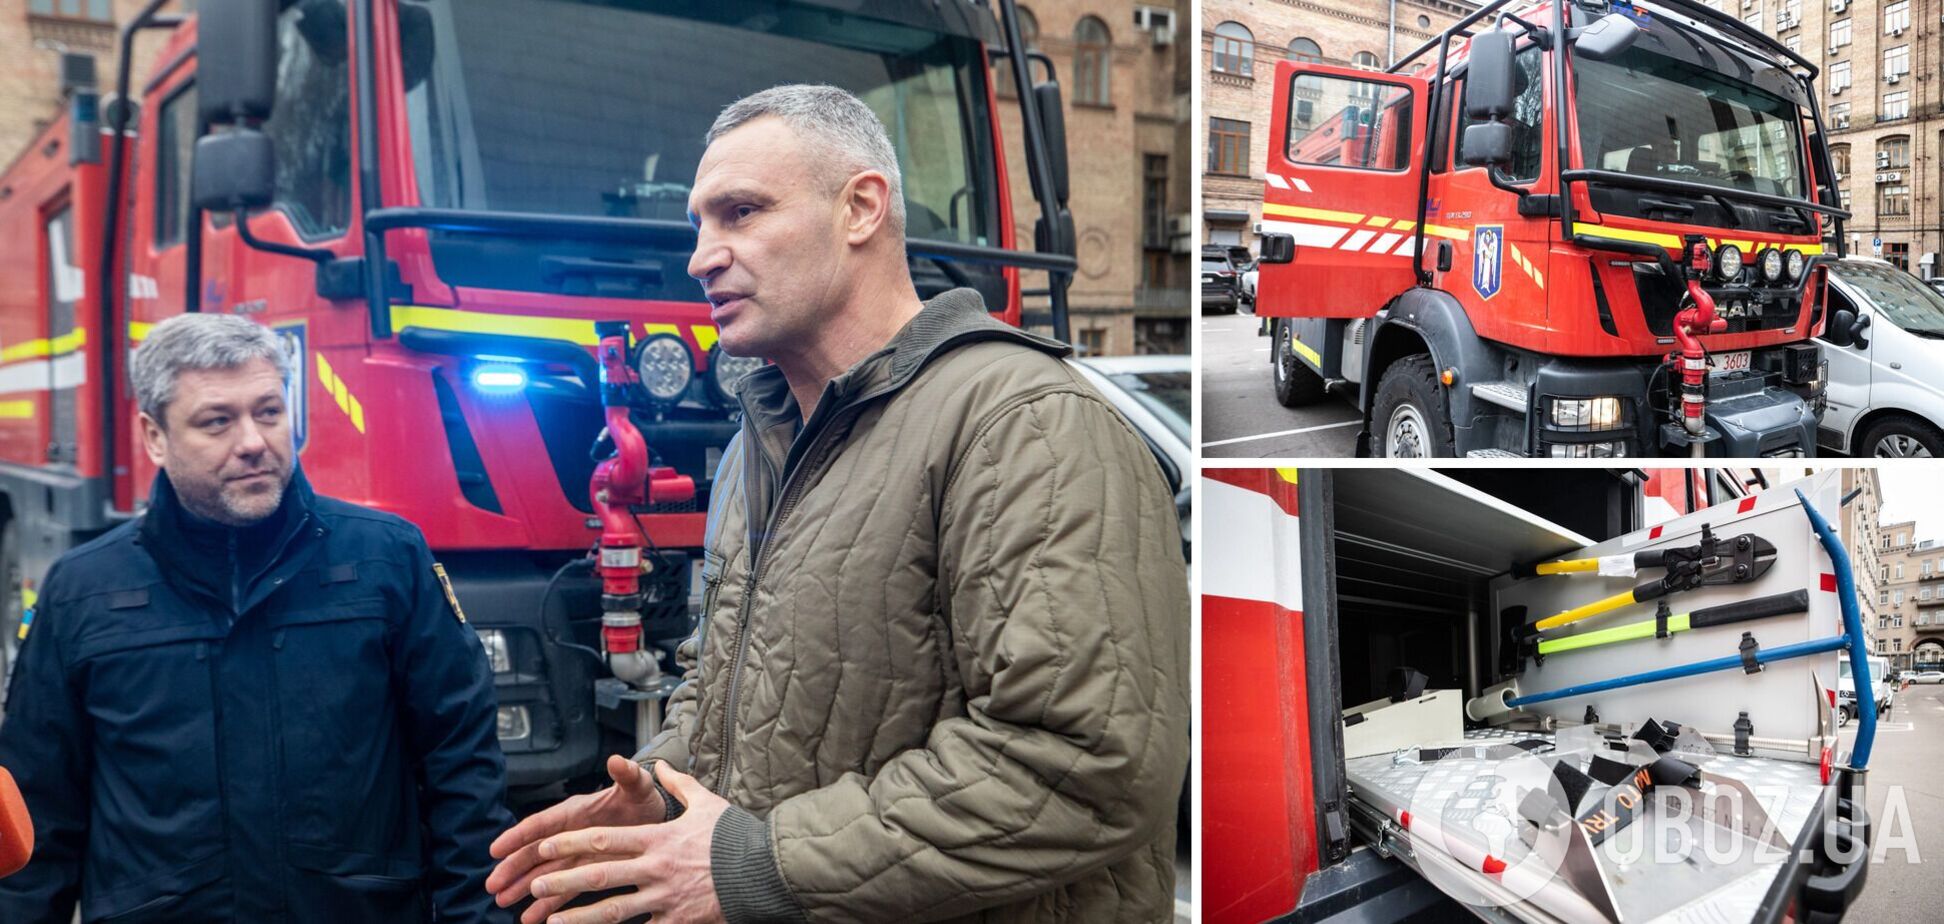 Іноземні партнери передали Києву ще один надсучасний пожежний автомобіль, – Кличко